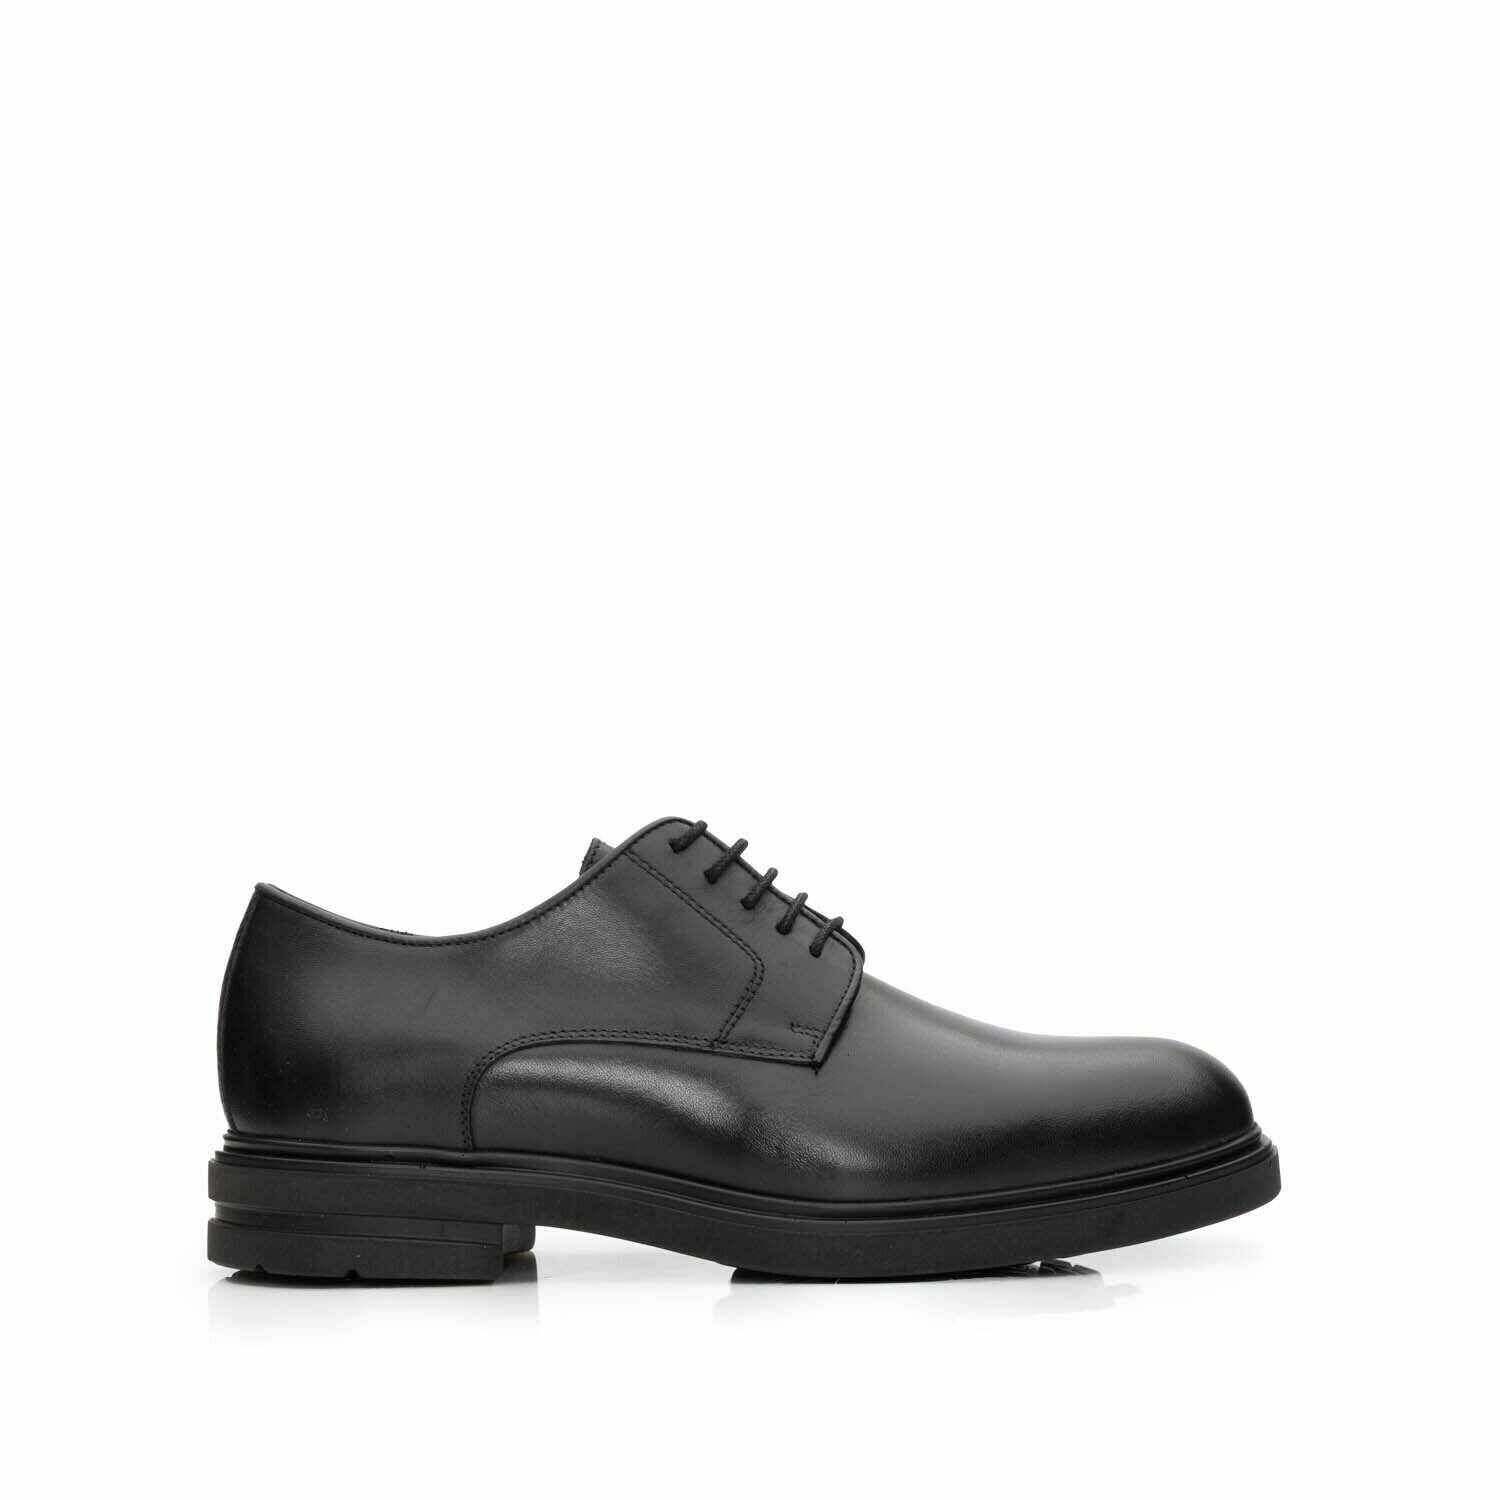 Pantofi casual barbati din piele naturala, Leofex - 699 Negru Box